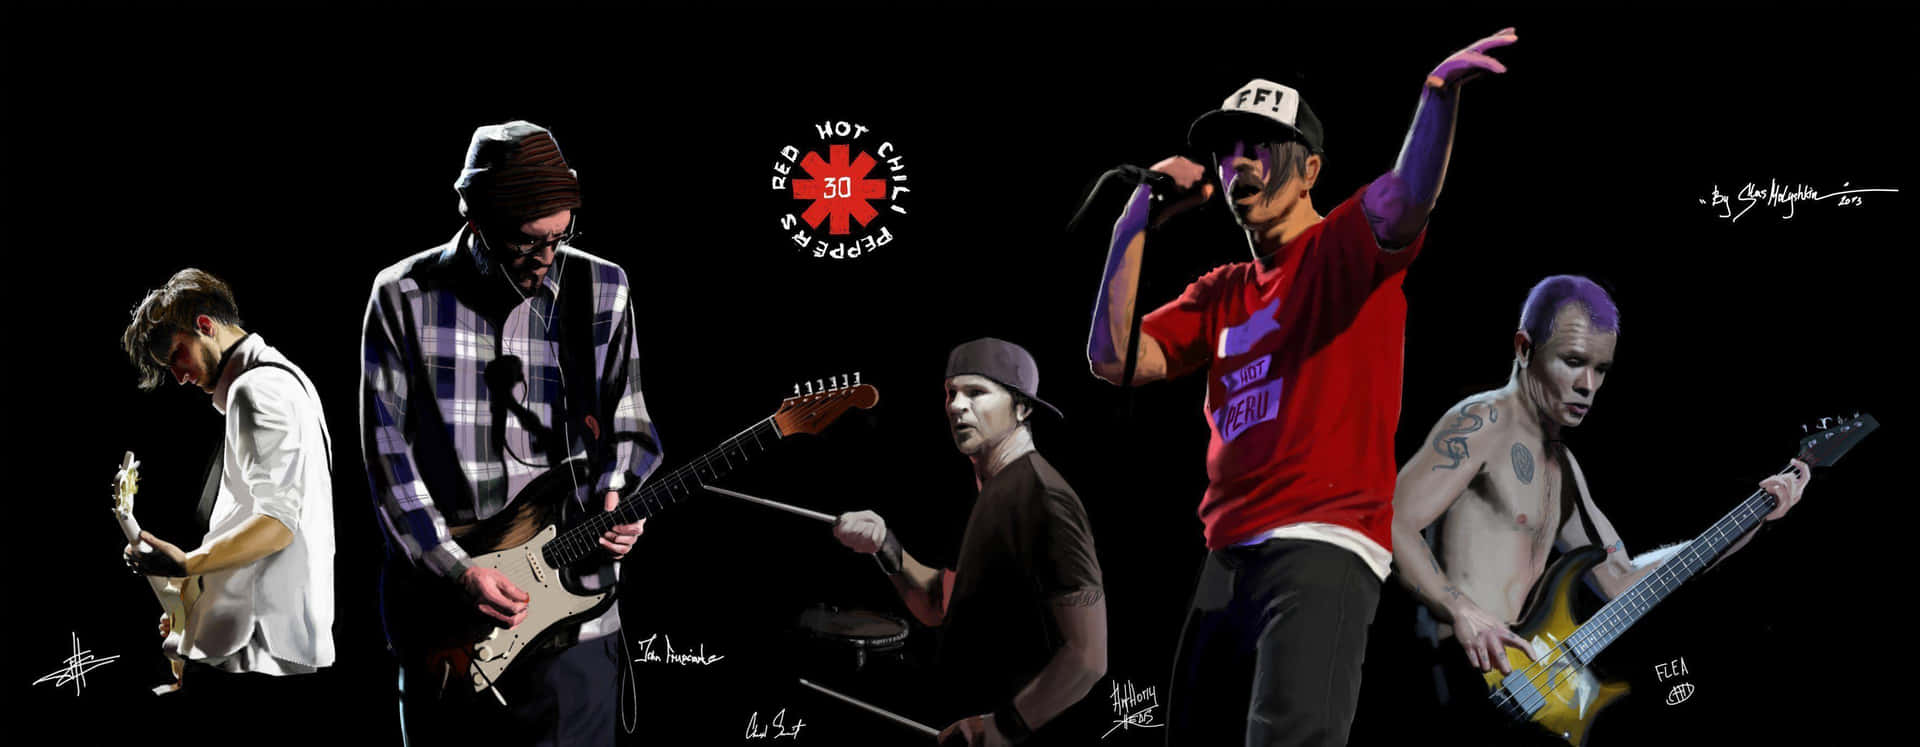 Red Hot Chili Peppers går på scenen for at rock de ydmyge fans Wallpaper